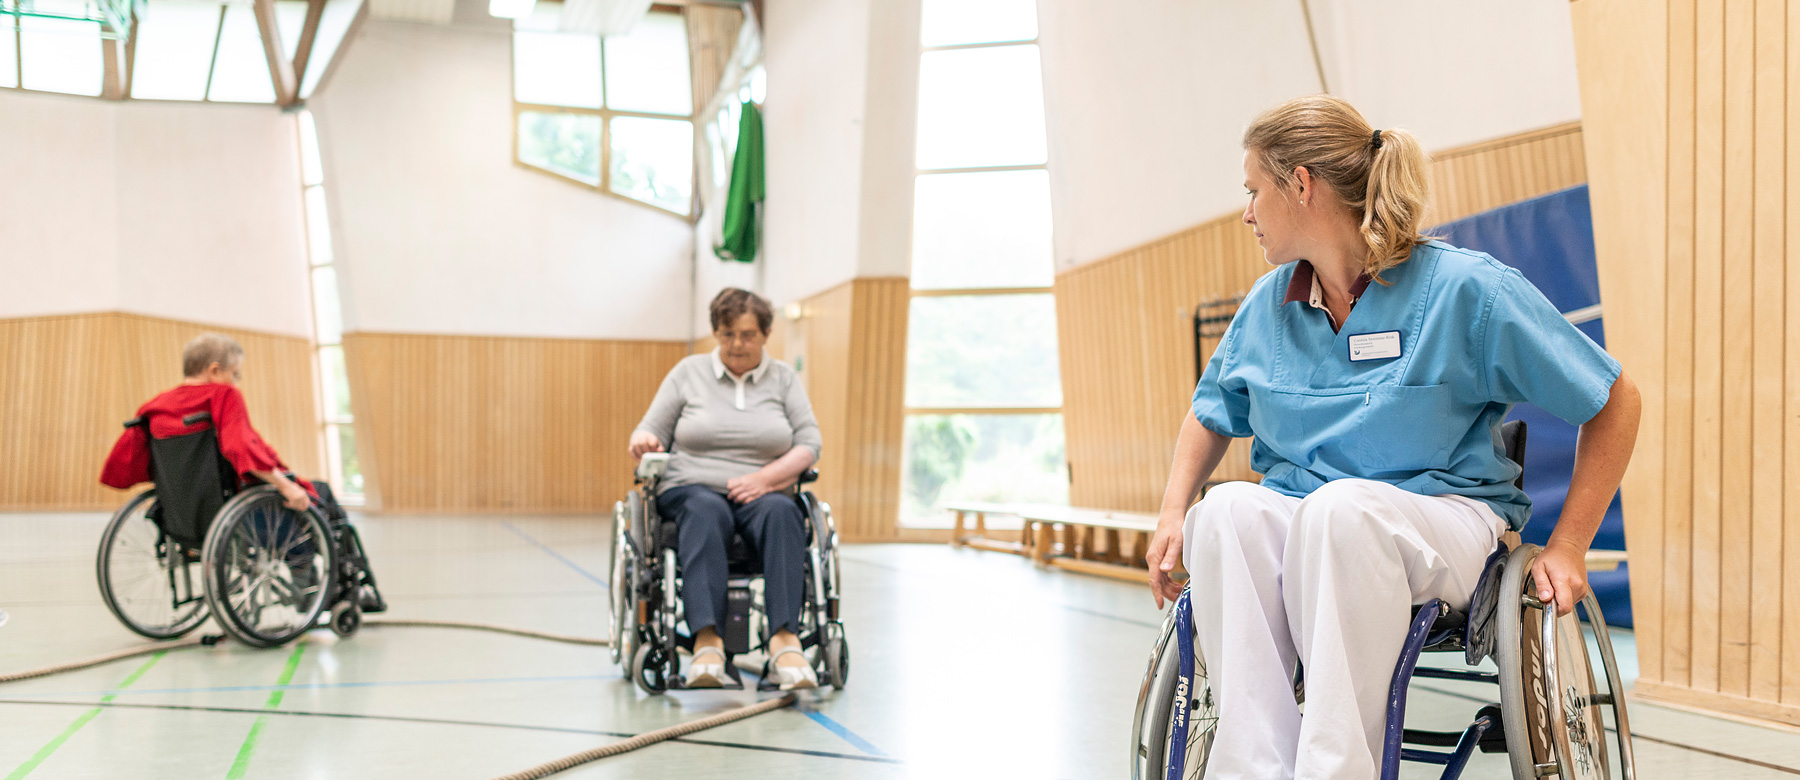 Physiotherapeutin übt das Rollstuhlfahren mit zwei Patientinnen.